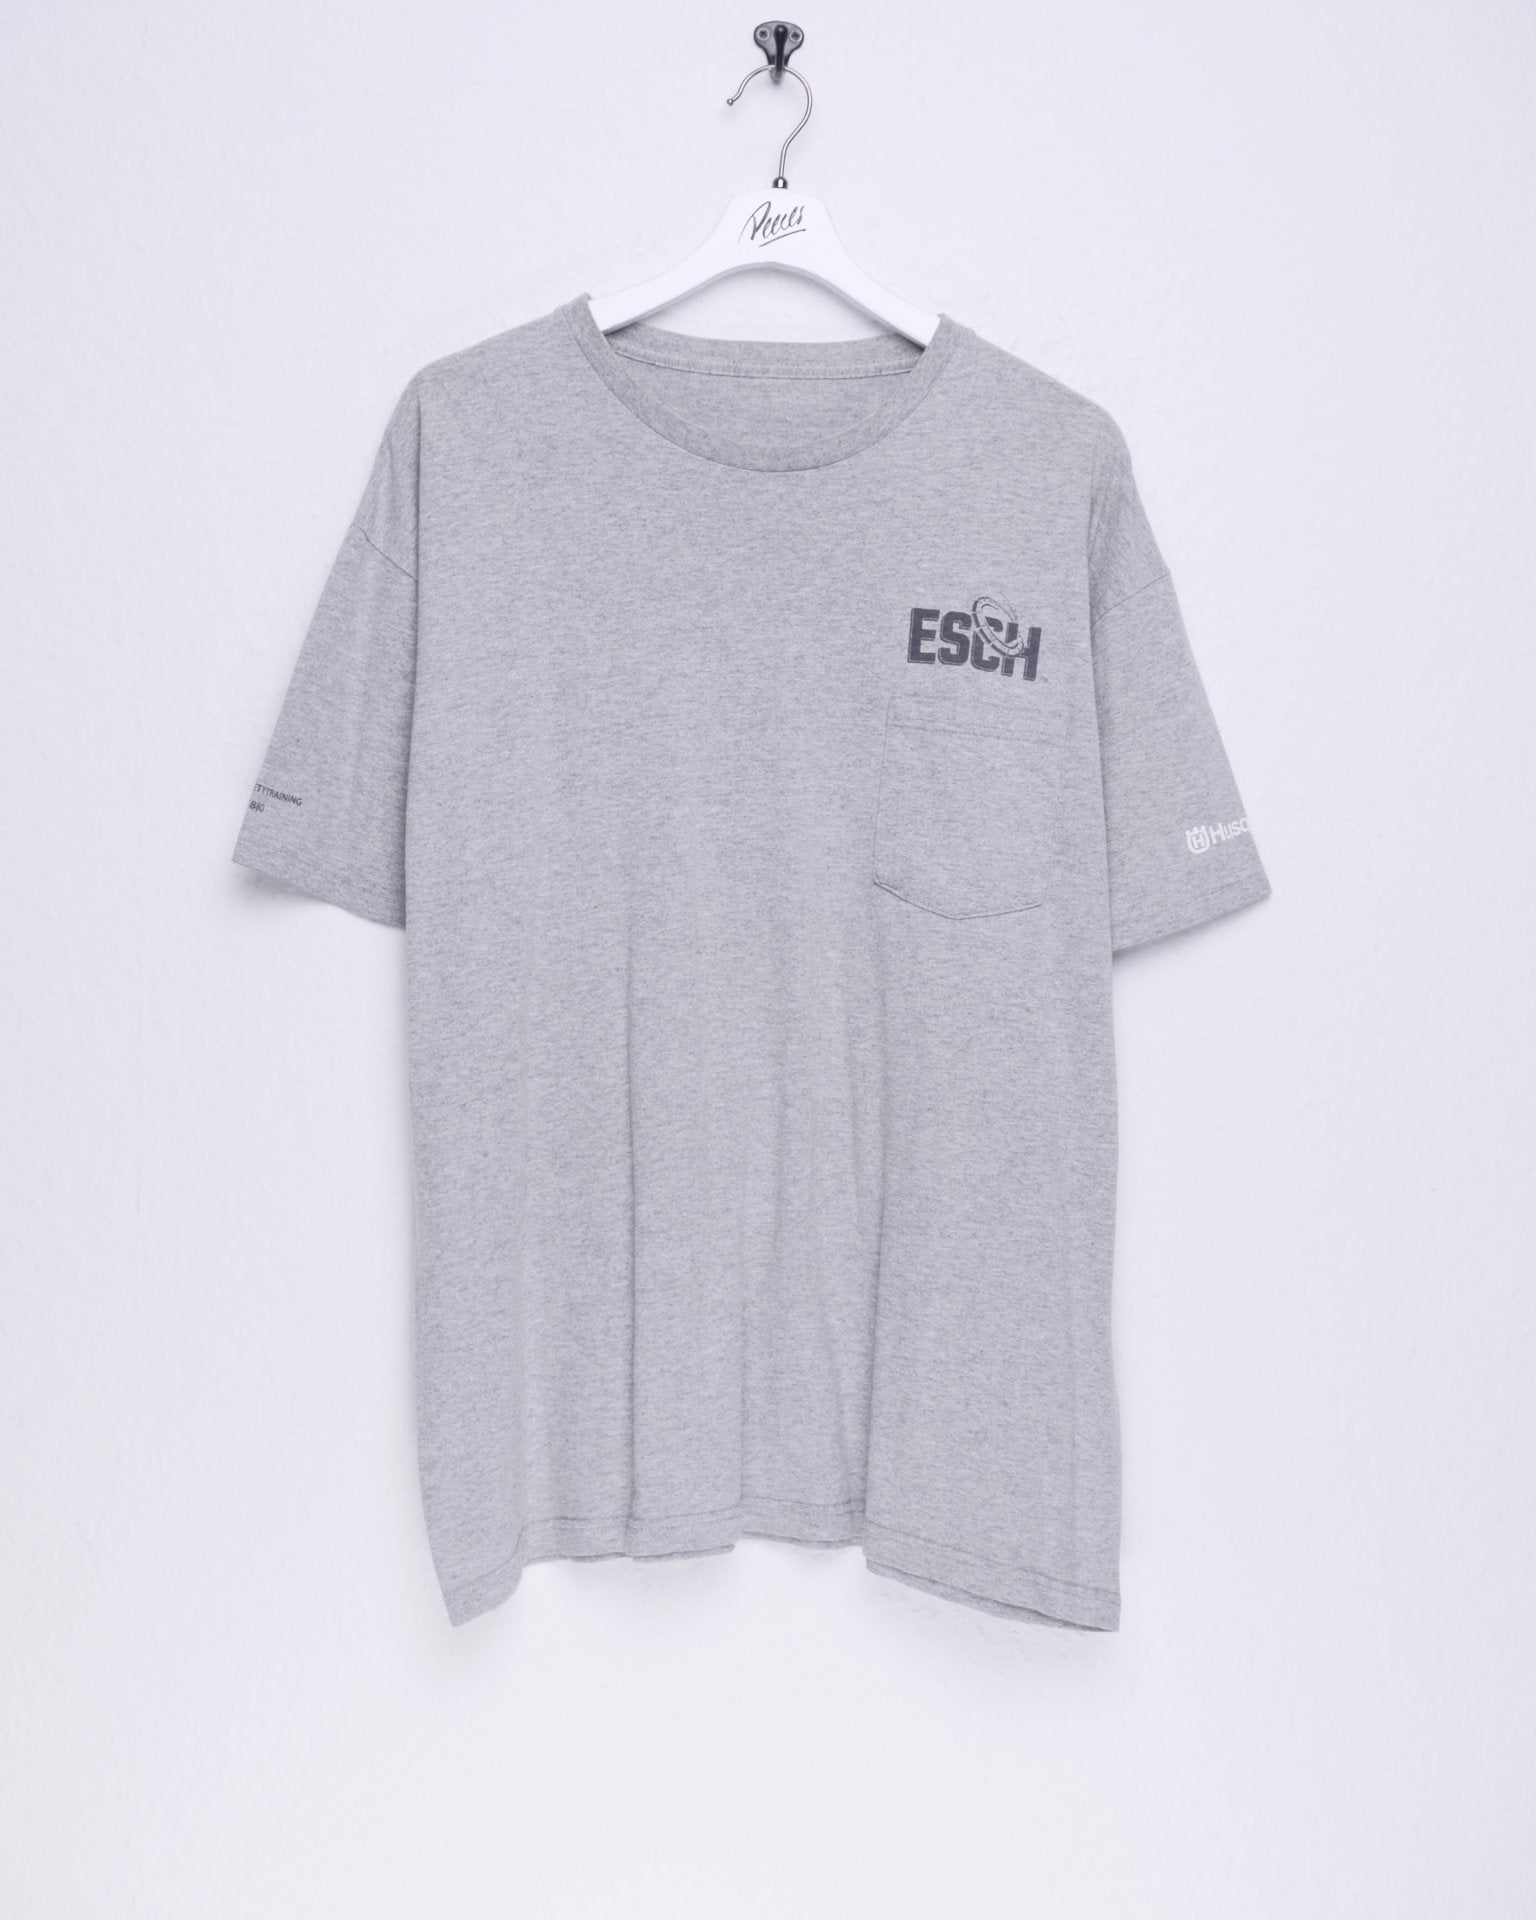 printed Esch grey Shirt - Peeces